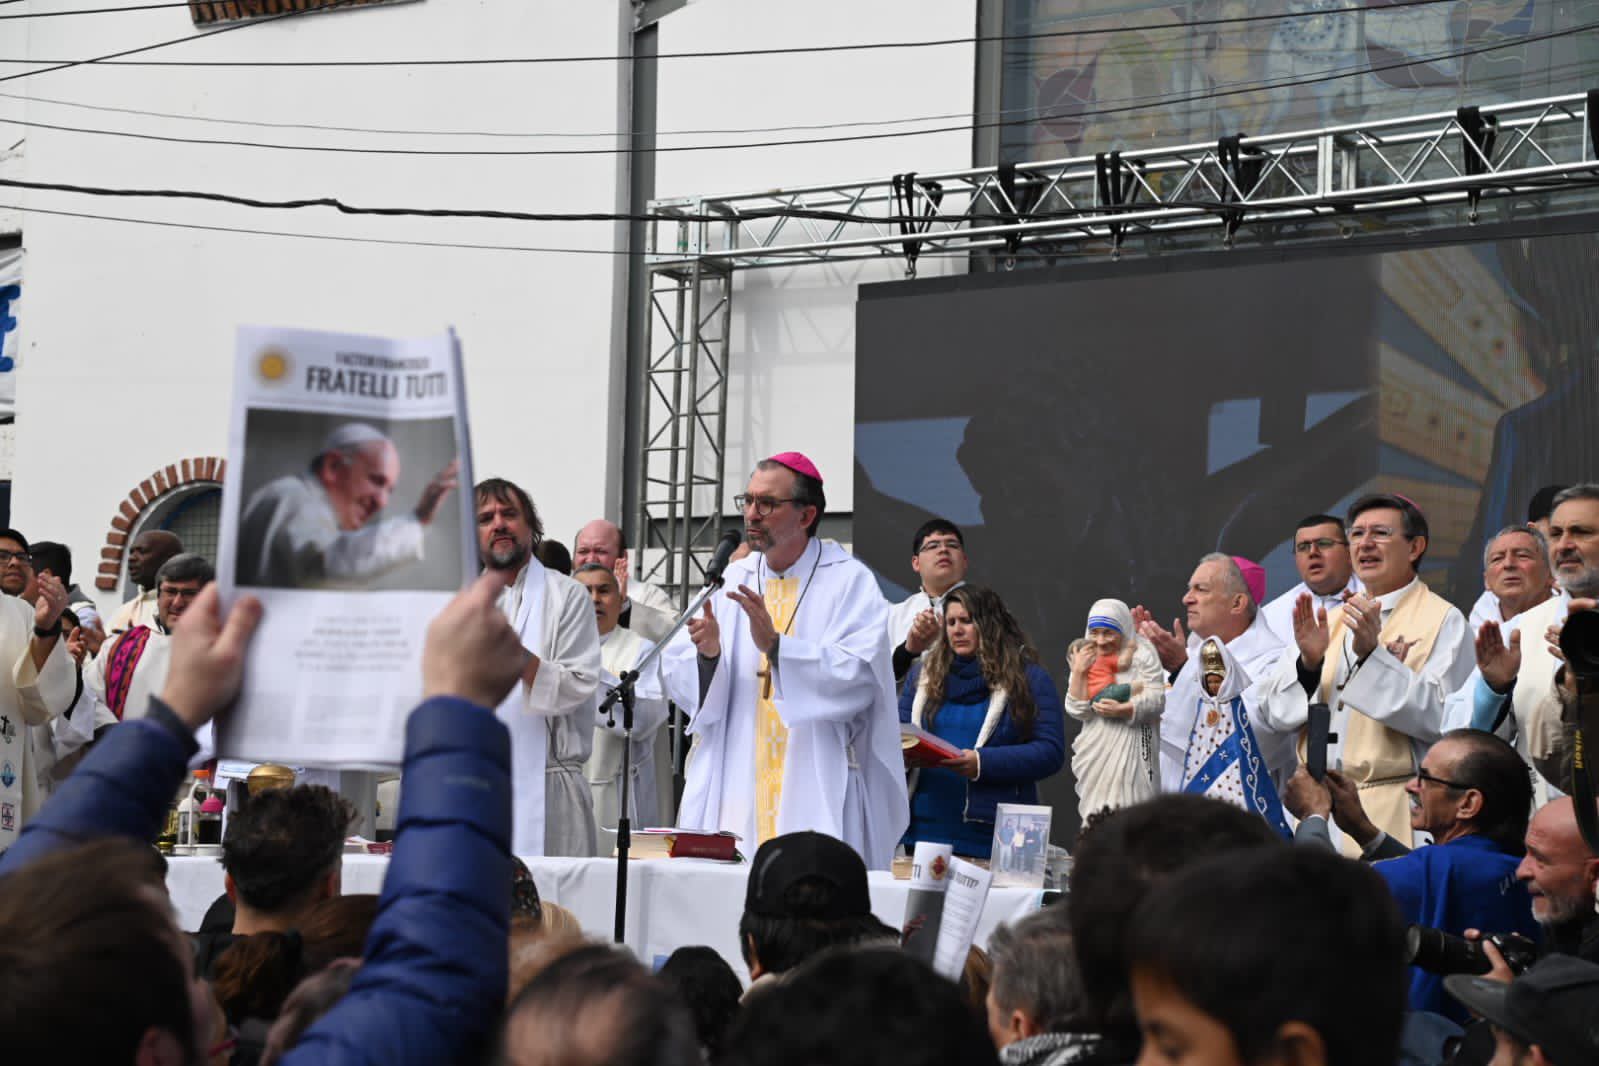 Los curas villeros realizaron una misa en desagravio al Papa Francisco a principios de mes